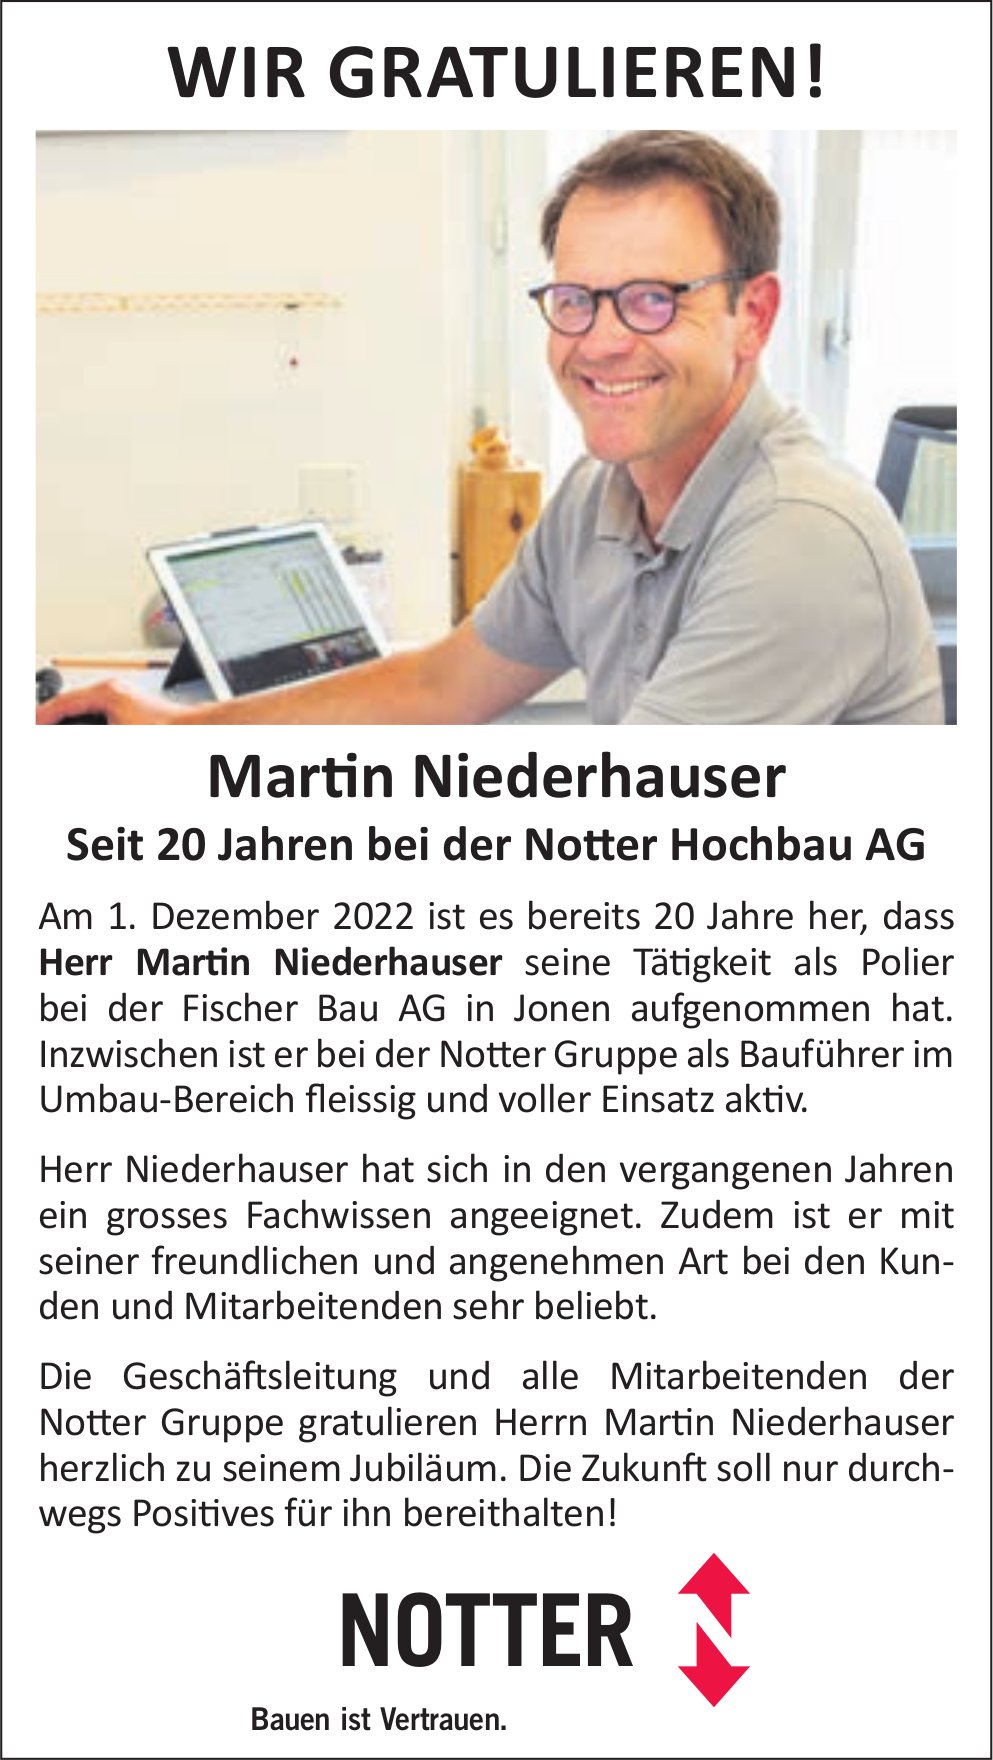 Notter Hochbau AG, Jonen - Wir gratulieren Martin Niederhauser für 20 Jahre